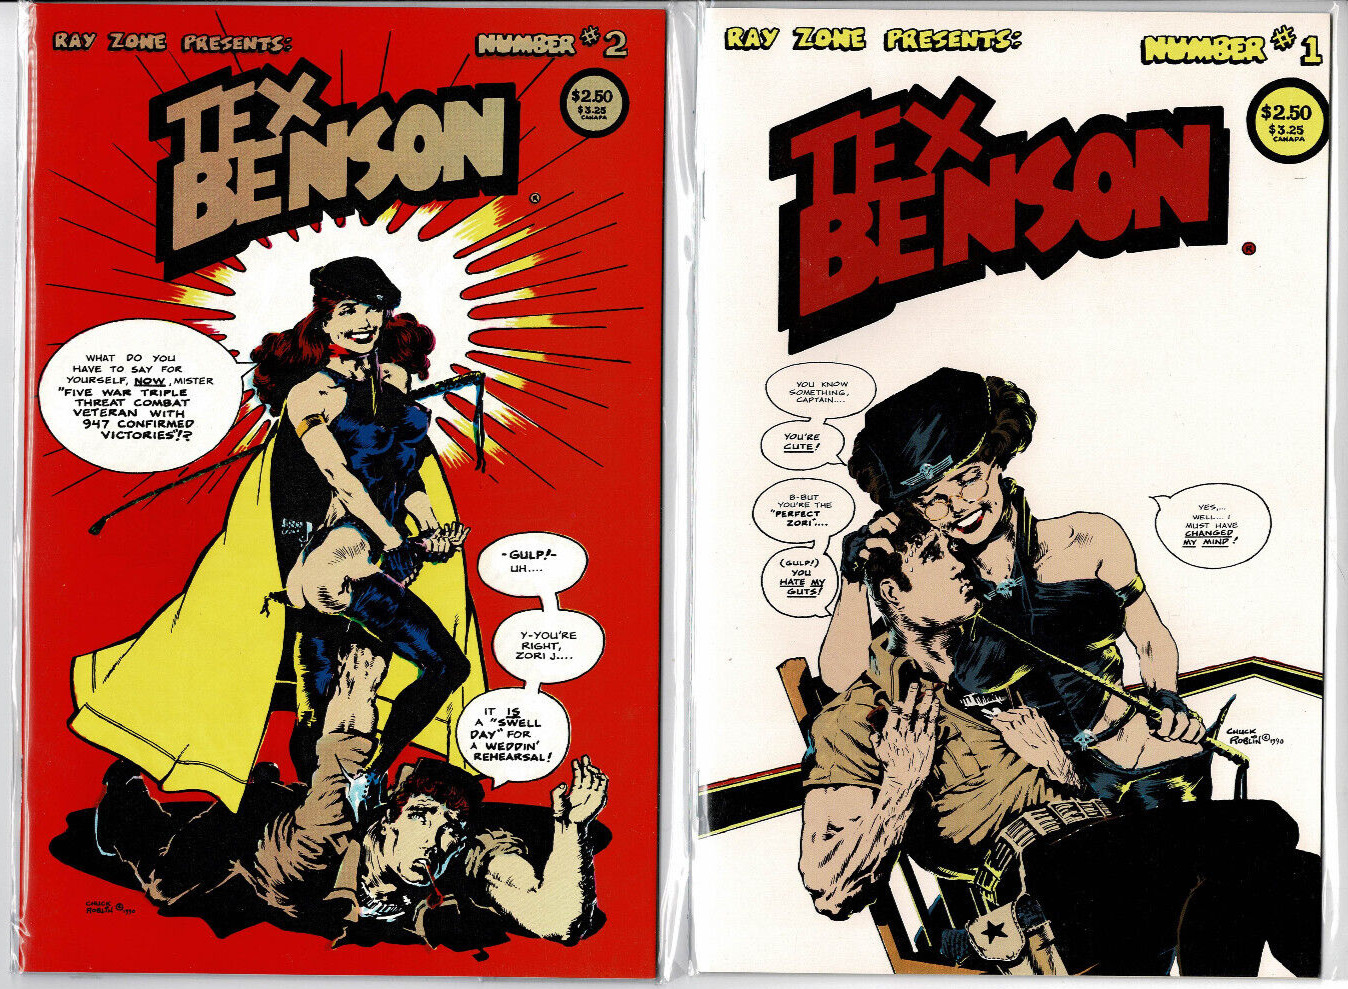 TEX BENSON  #1 - #2. Ray Zone. Sexy retro adventure stories